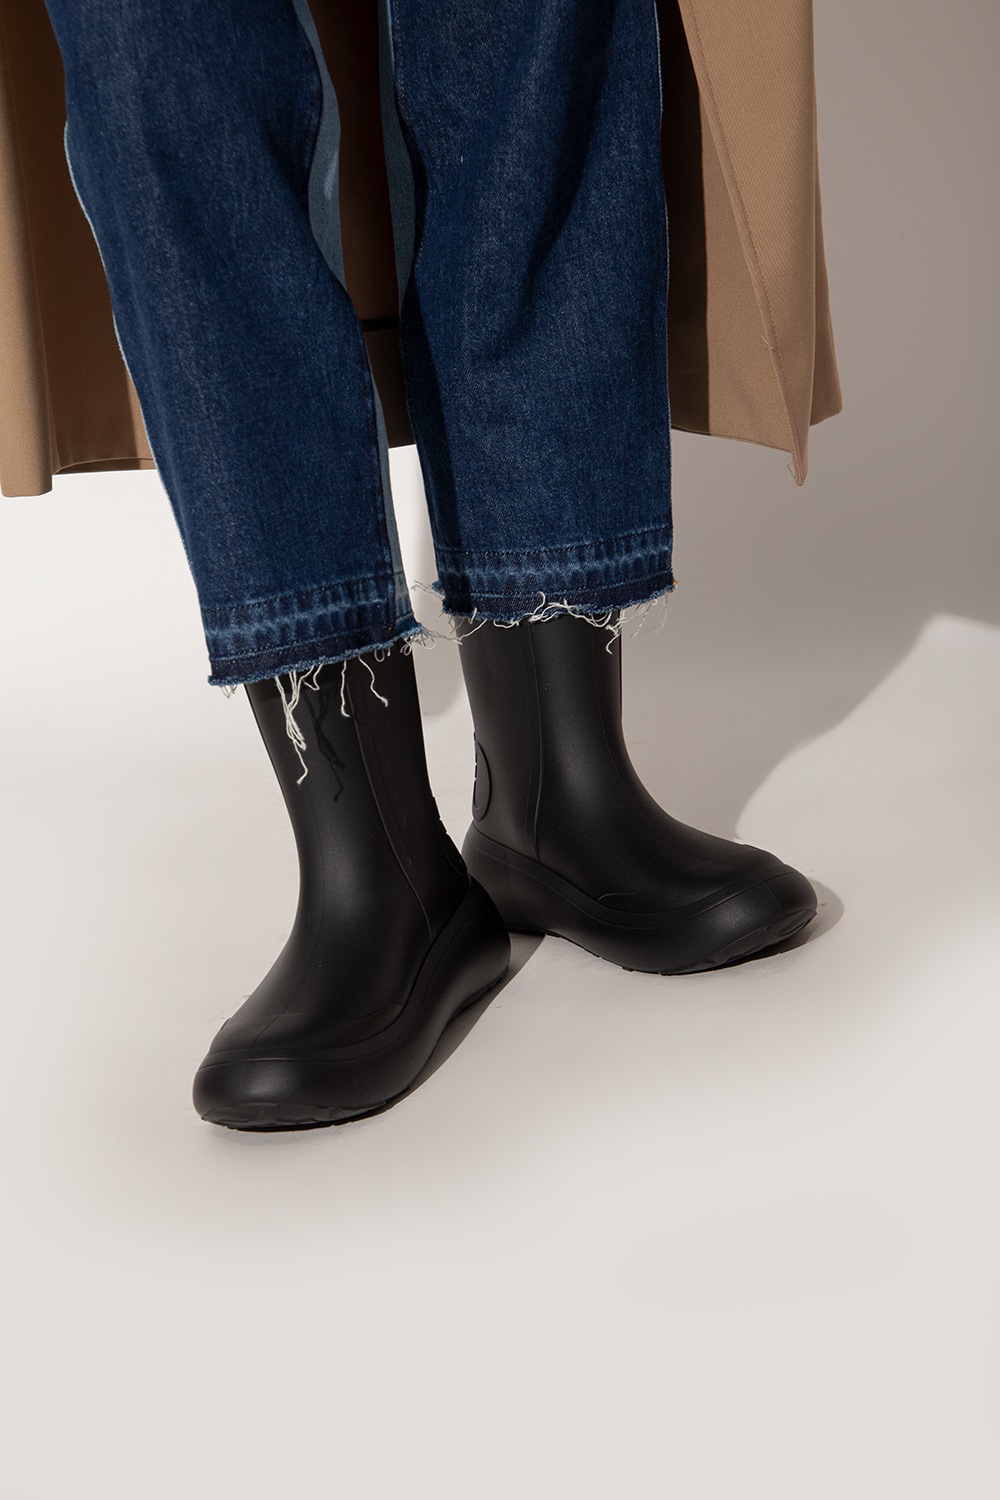 Salvatore Ferragamo Rain boots with Bags